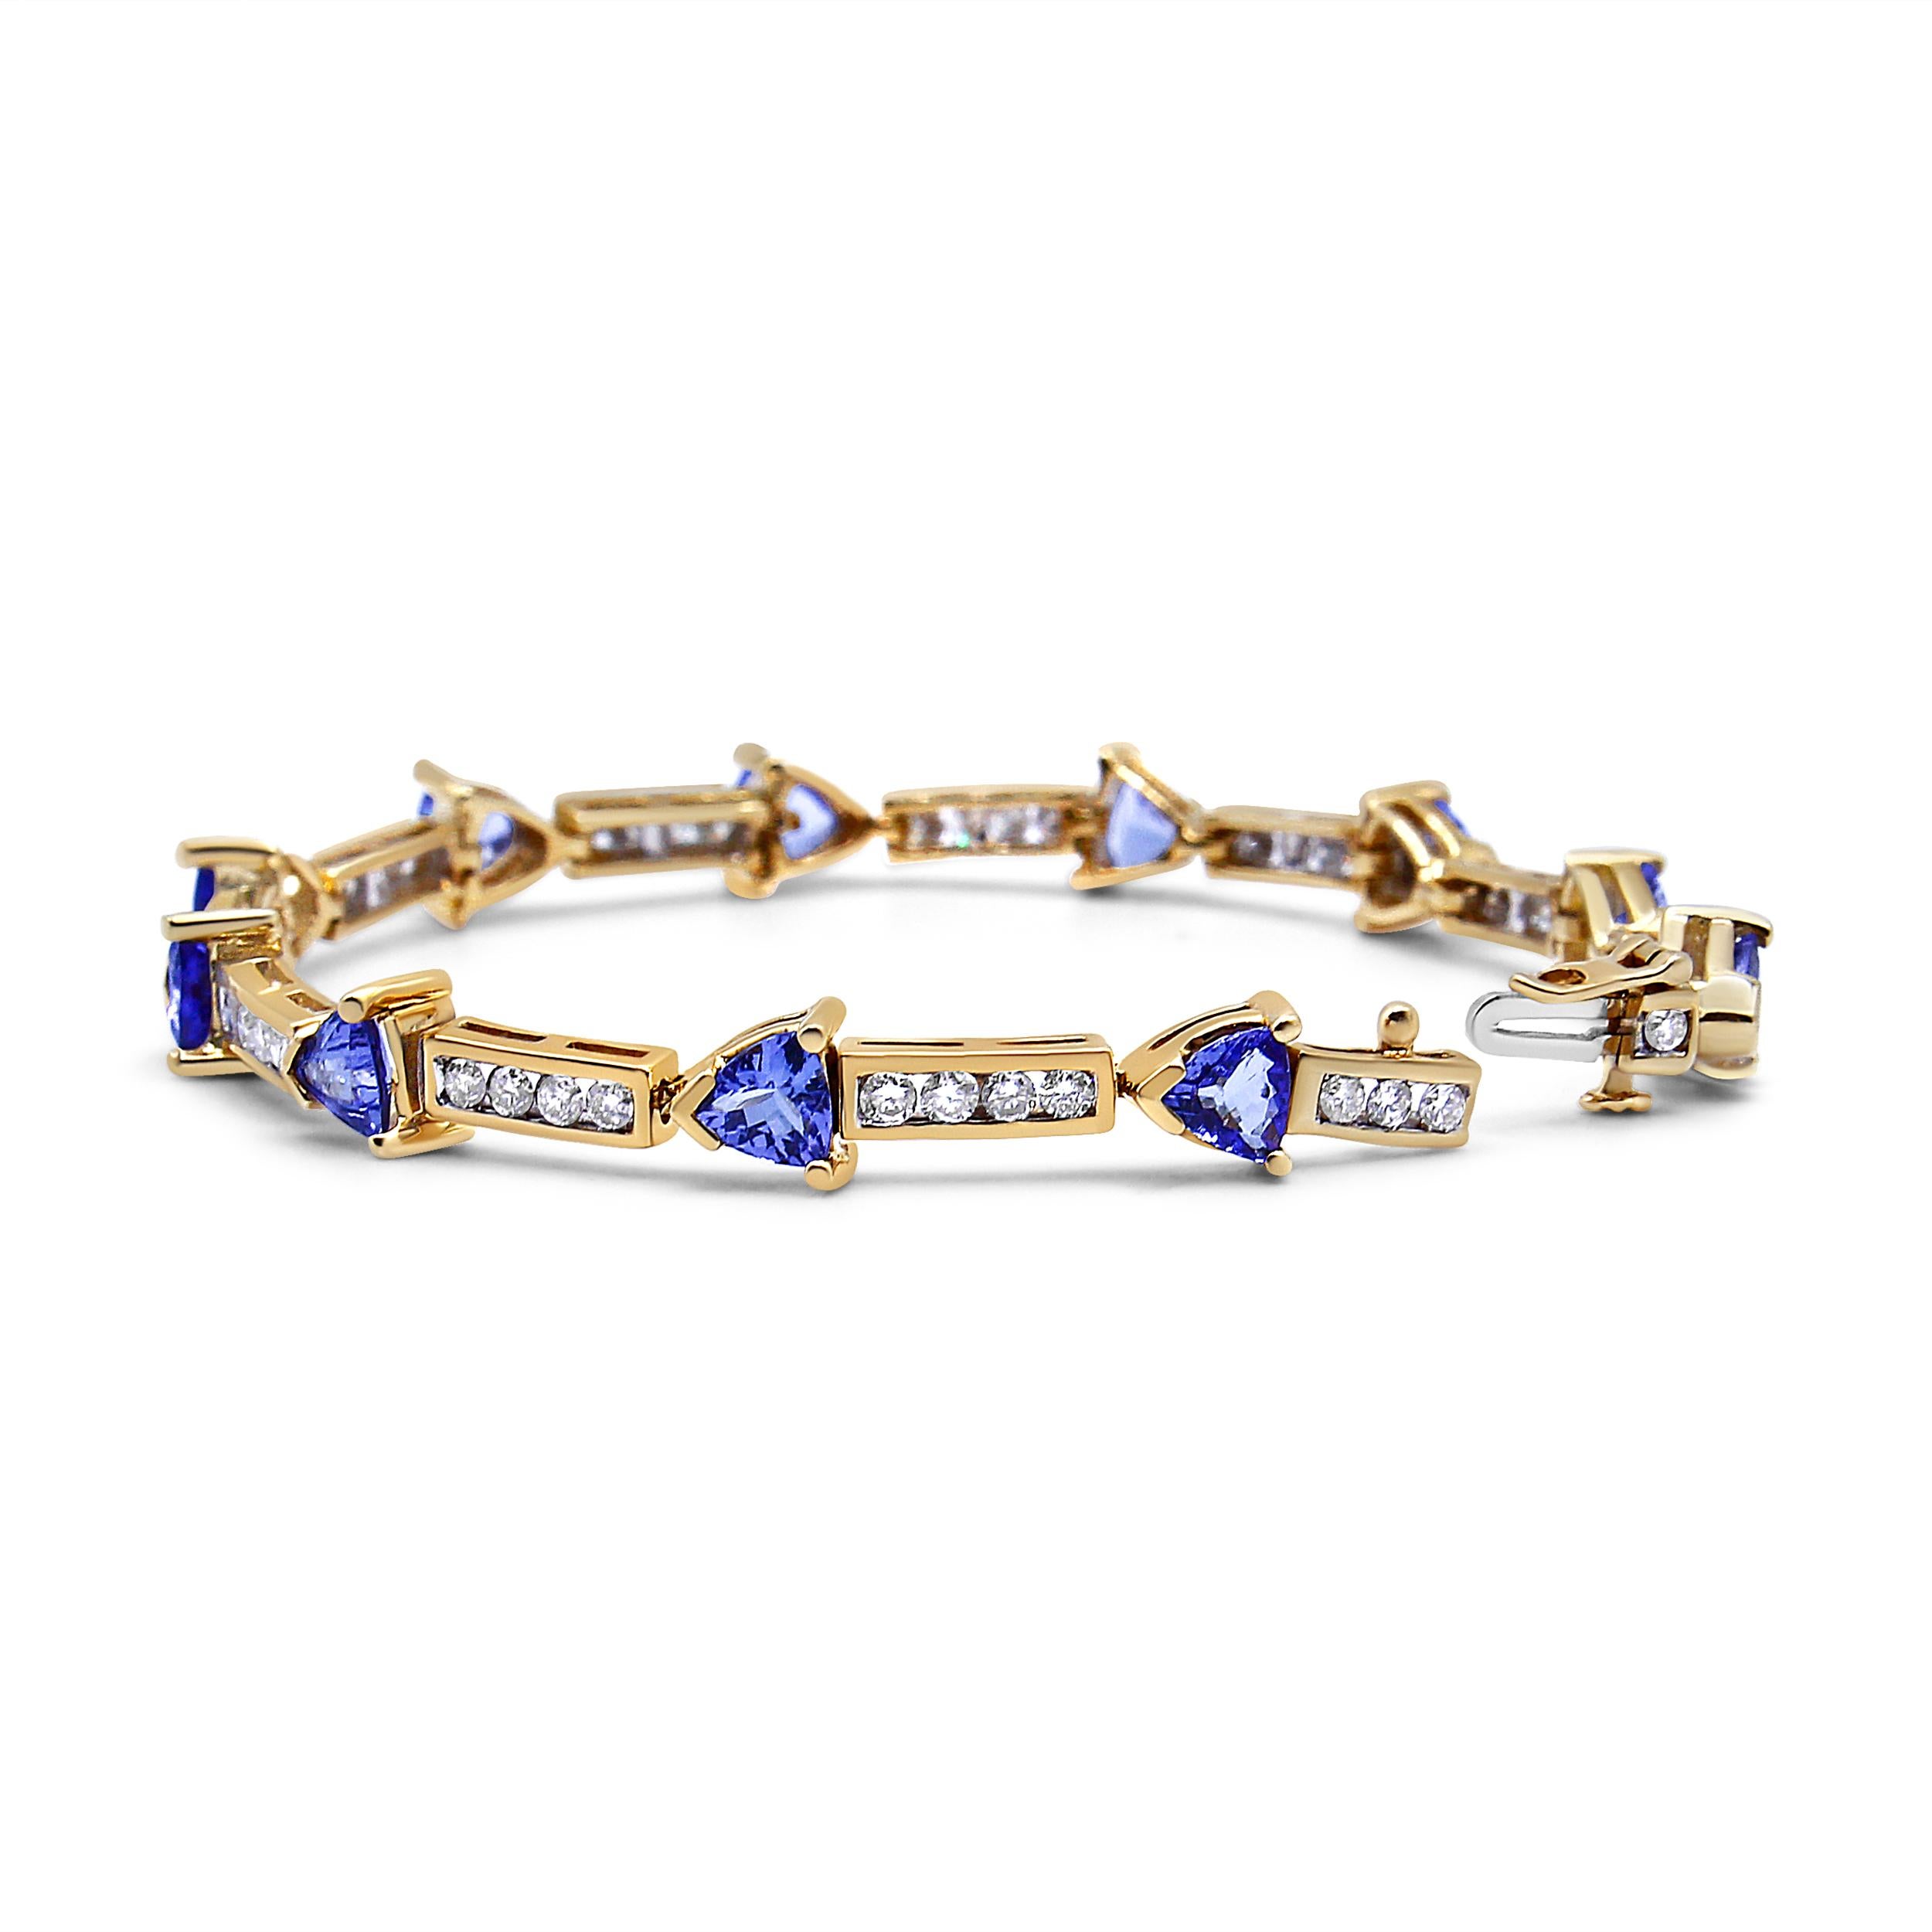 Bringen Sie Ihren Stil und Ihre Raffinesse mit diesem verführerischen Armband mit Tansaniten und Diamanten für sie zum Ausdruck. Glitzernde 5 mm große Billionen Tansanit-Edelsteine wechseln sich mit wunderschönen runden 1 5/8 Cttw Diamanten in einem